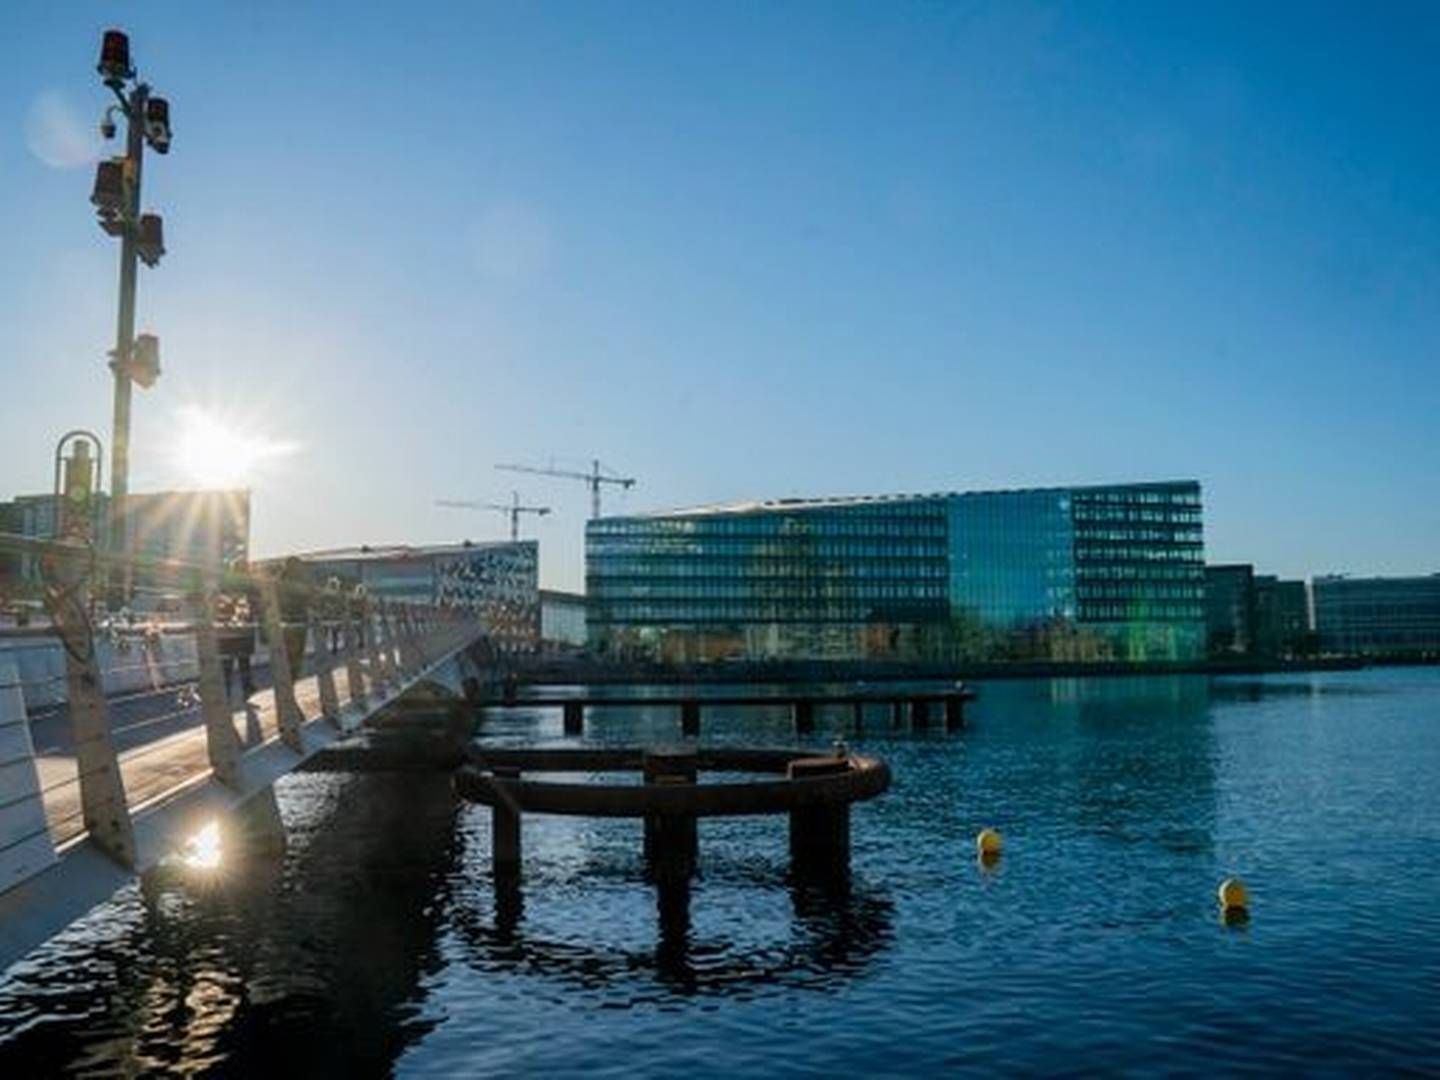 Aller Media i Danmark har hovedsæde på havnen i København. Nu bliver norske Dag Sørsdahl topchef for de fire nordiske landes medieselskaber. | Foto: Pr Aller Foto og Video